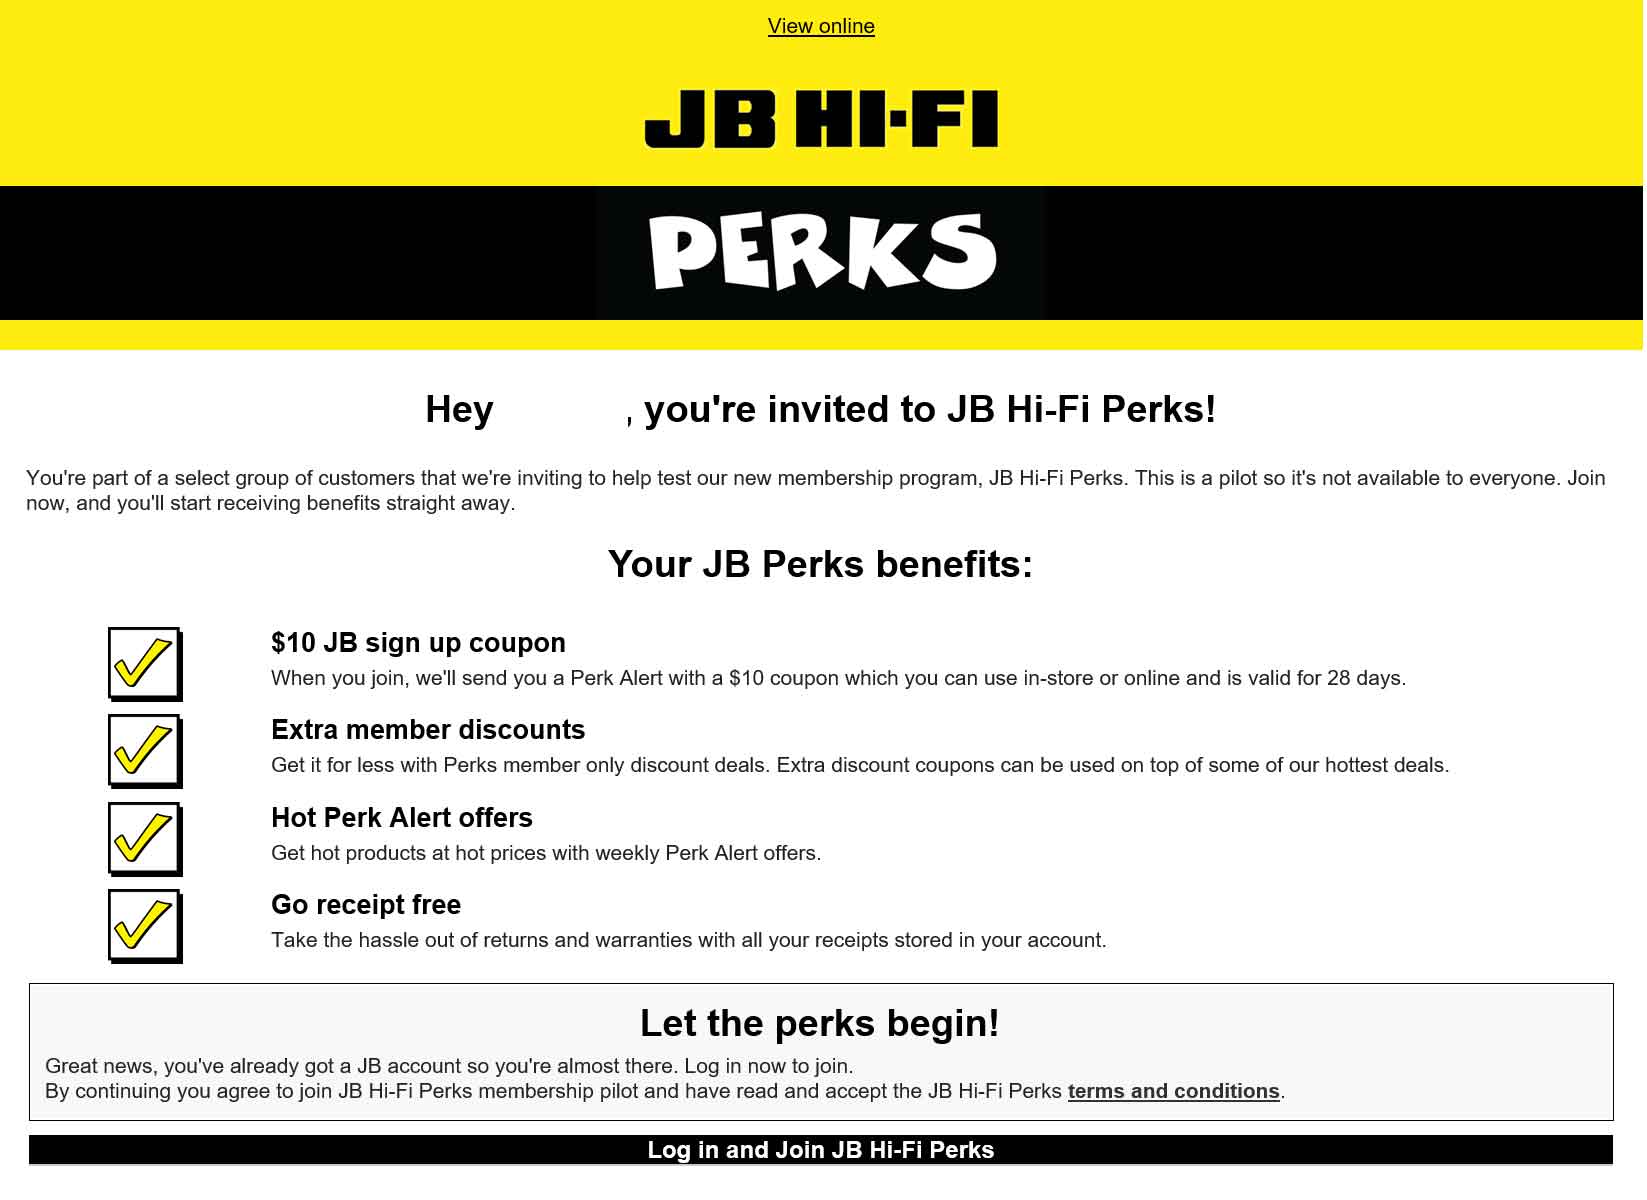 JB Hi-Fi Perks